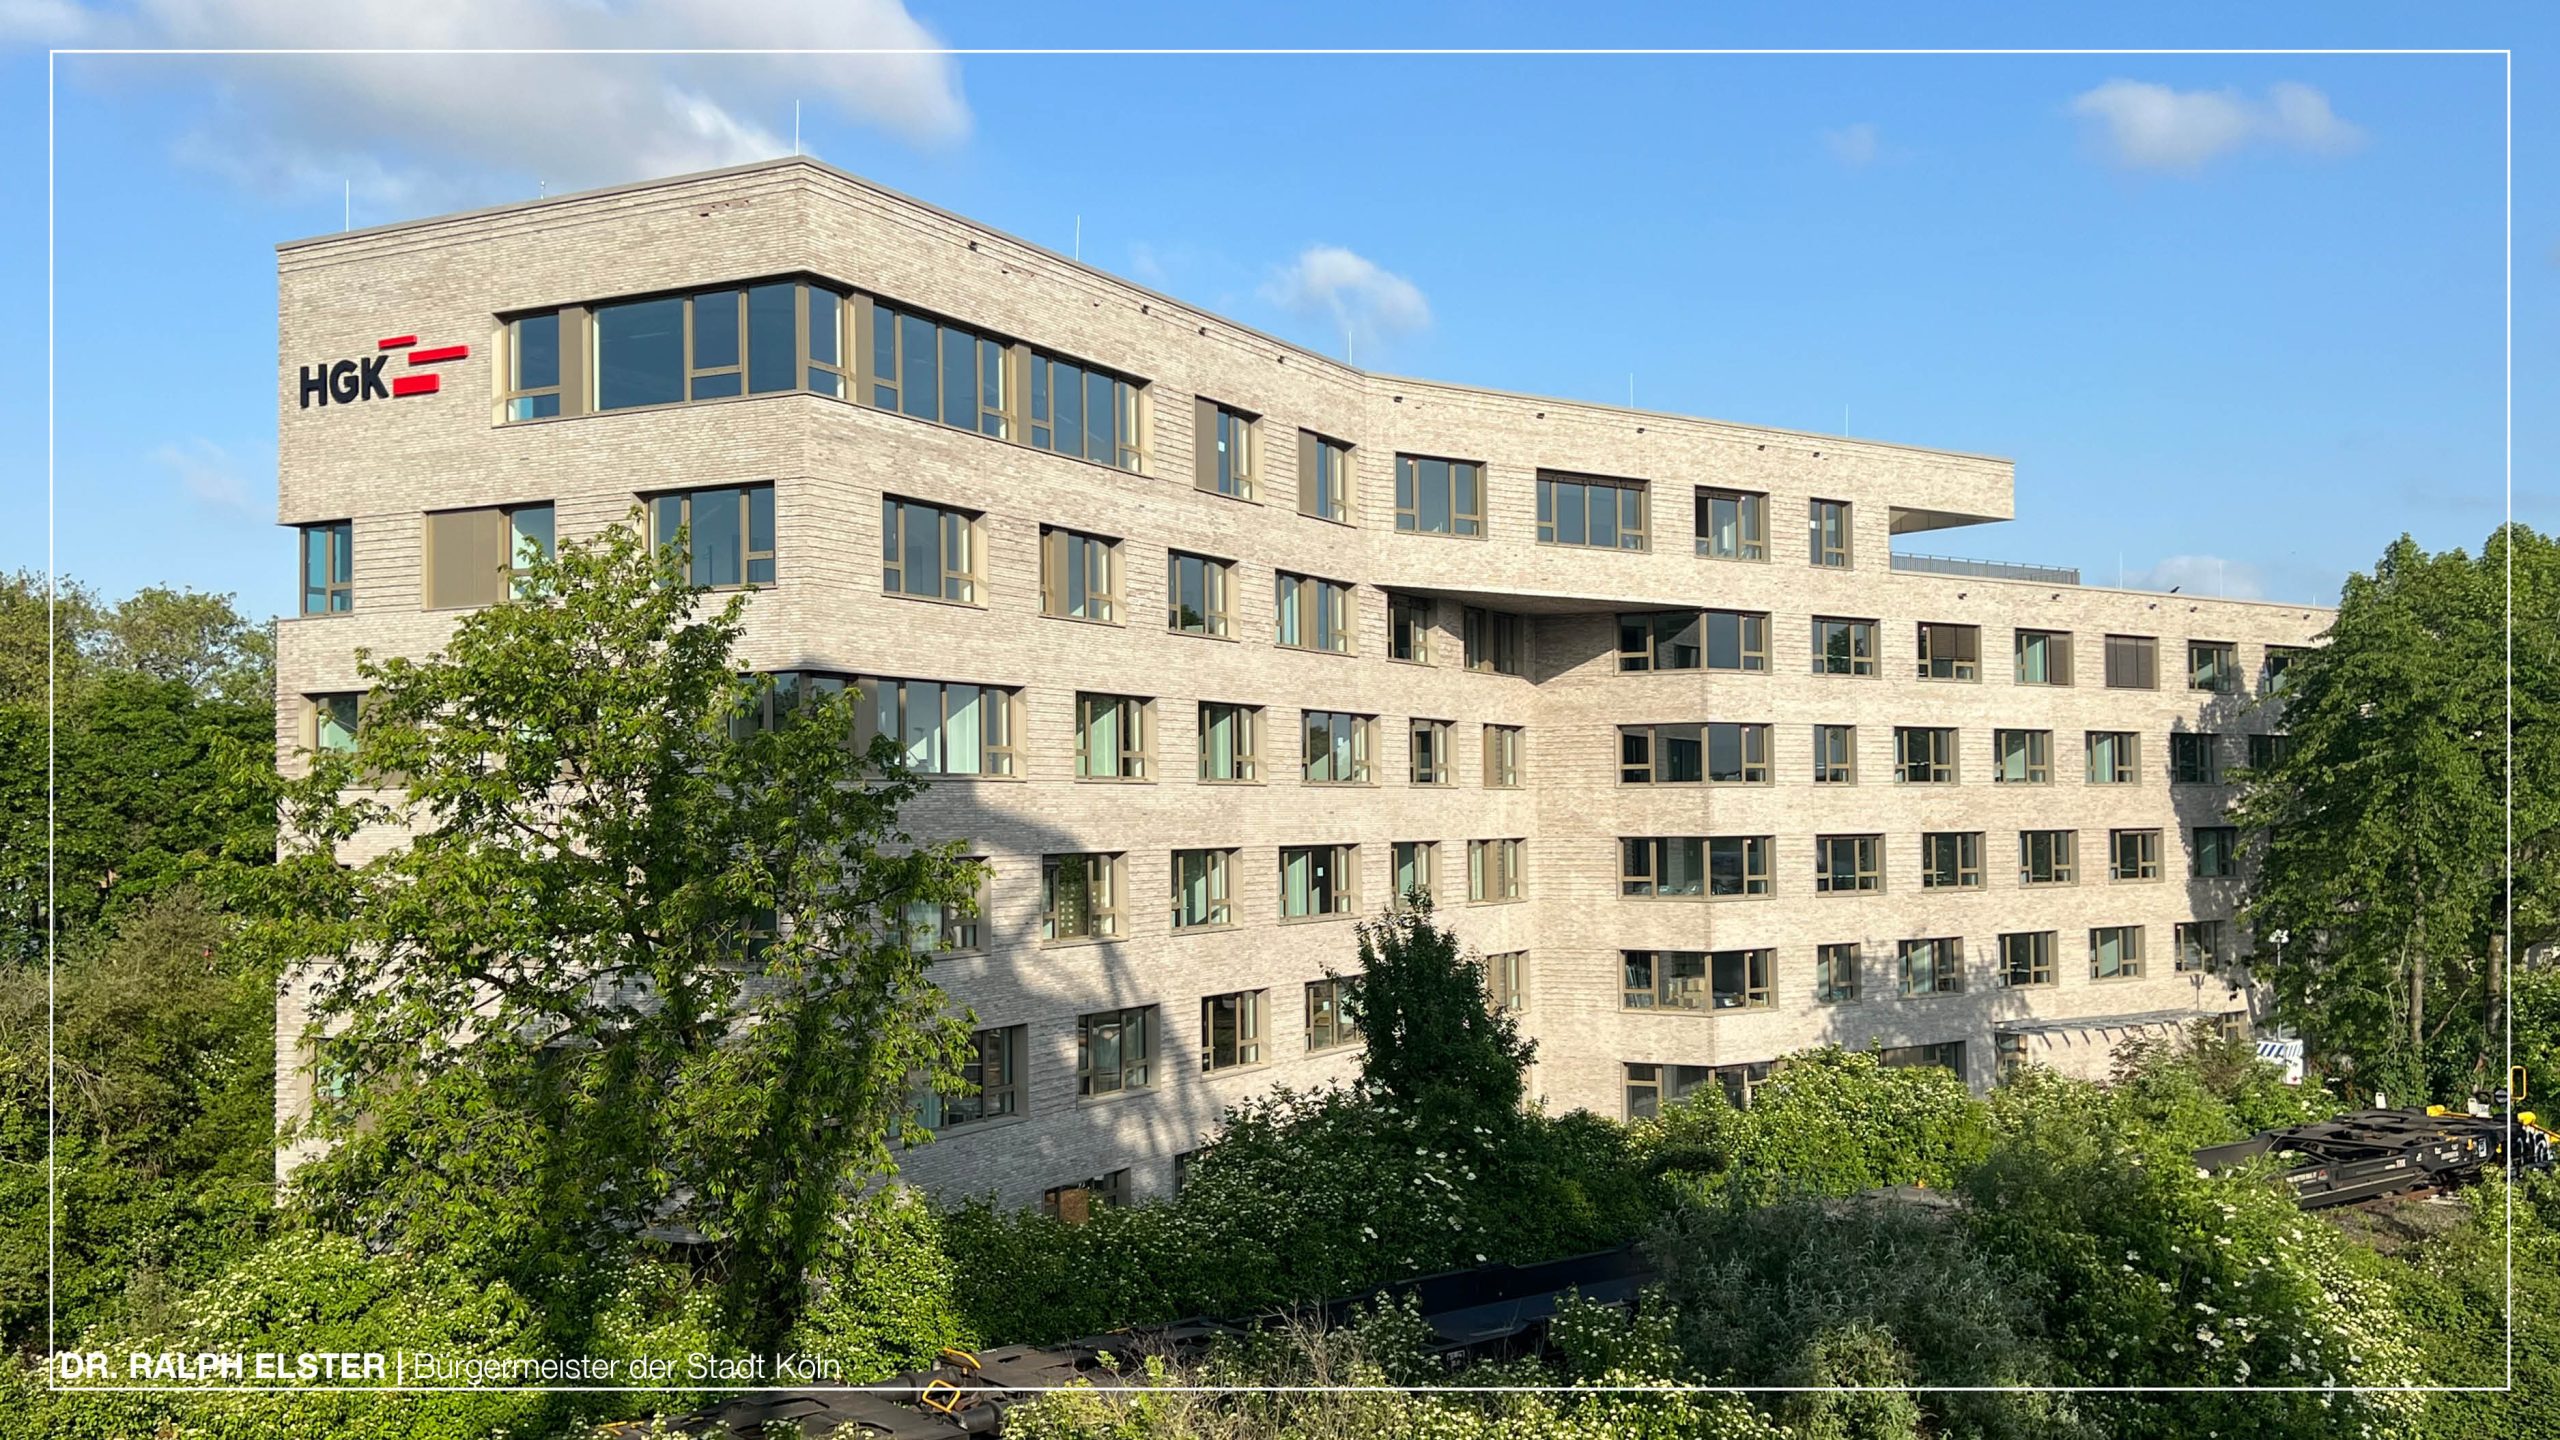 Neue HGK-Zentrale: Der „Westkai“ sorgt für eine sehr gelungene architektonische Landmarke